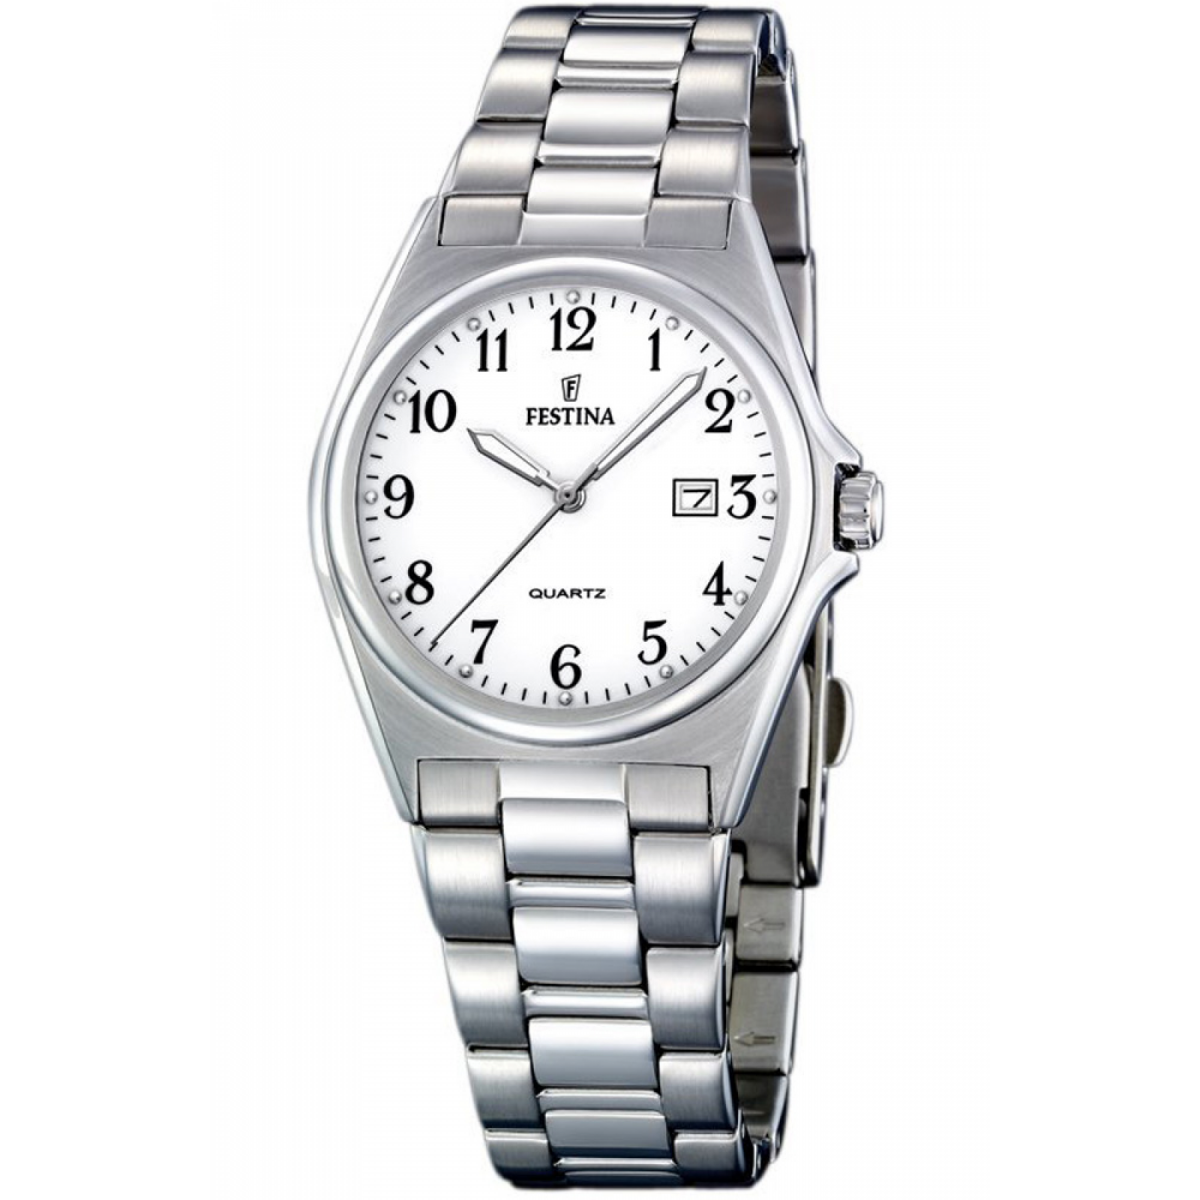 Netto zoeken Verkeersopstopping Uurwerken Festina Elegance F16375/1 Classic Dames horloge